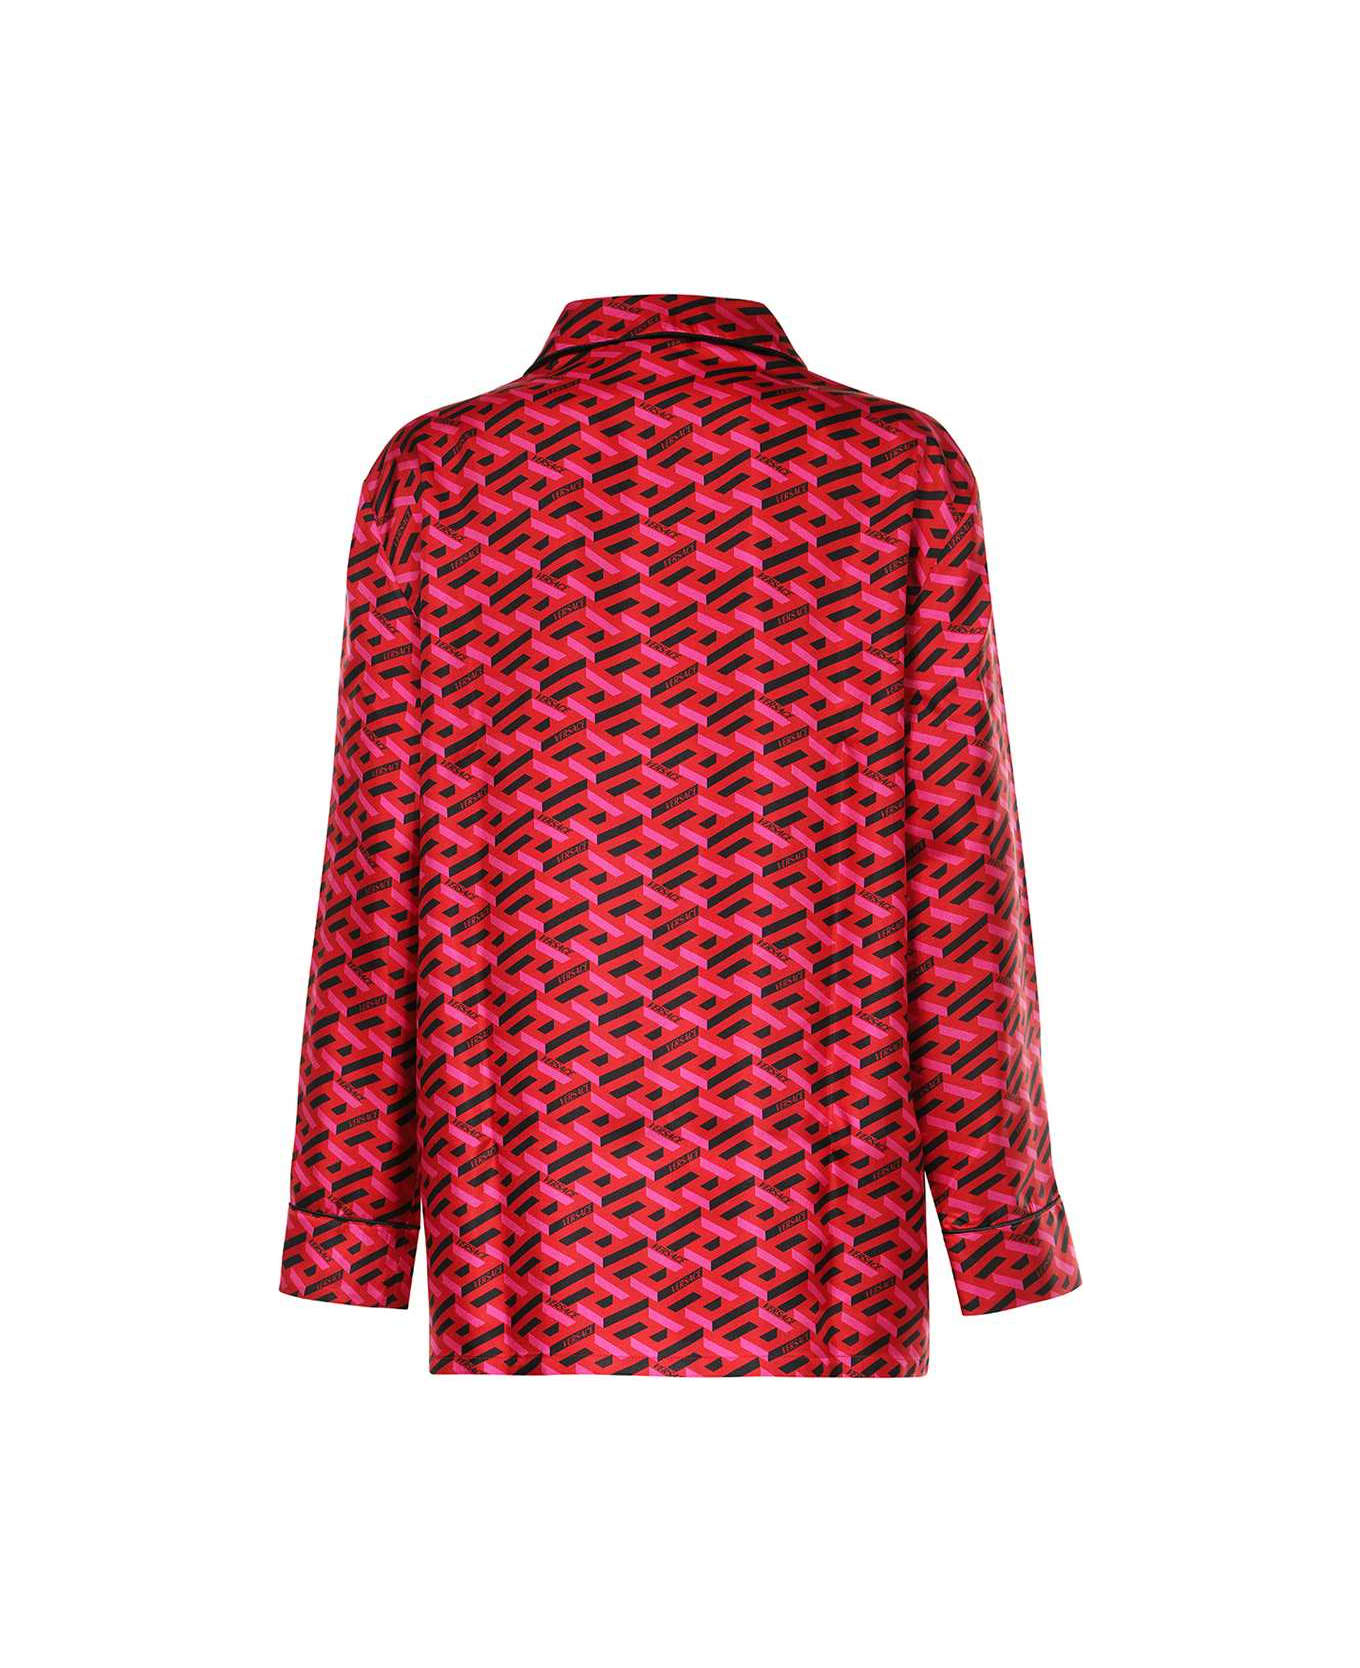 Versace Printed Silk Pajama Blouse - Fuchsia